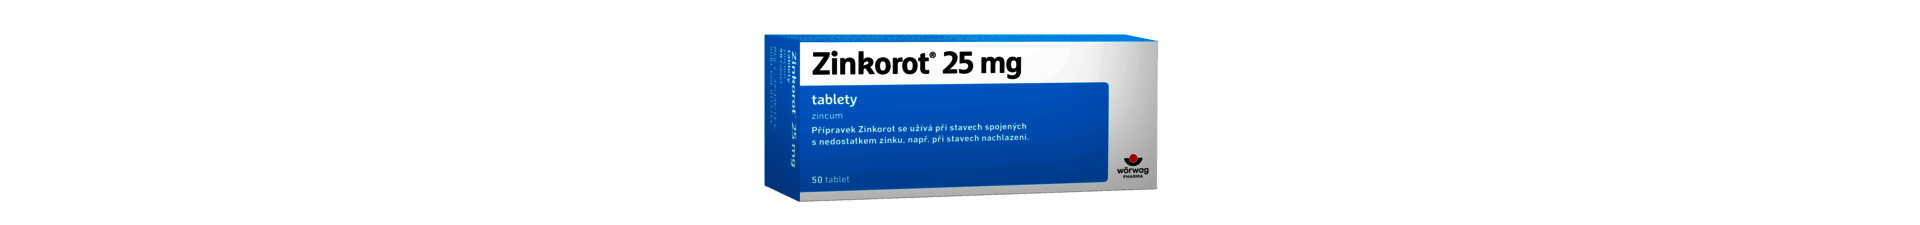 Zinek - zinkorot tablety, pro děti, dávkovanie, nedostatek zinku, účinky, maximální denní dávka